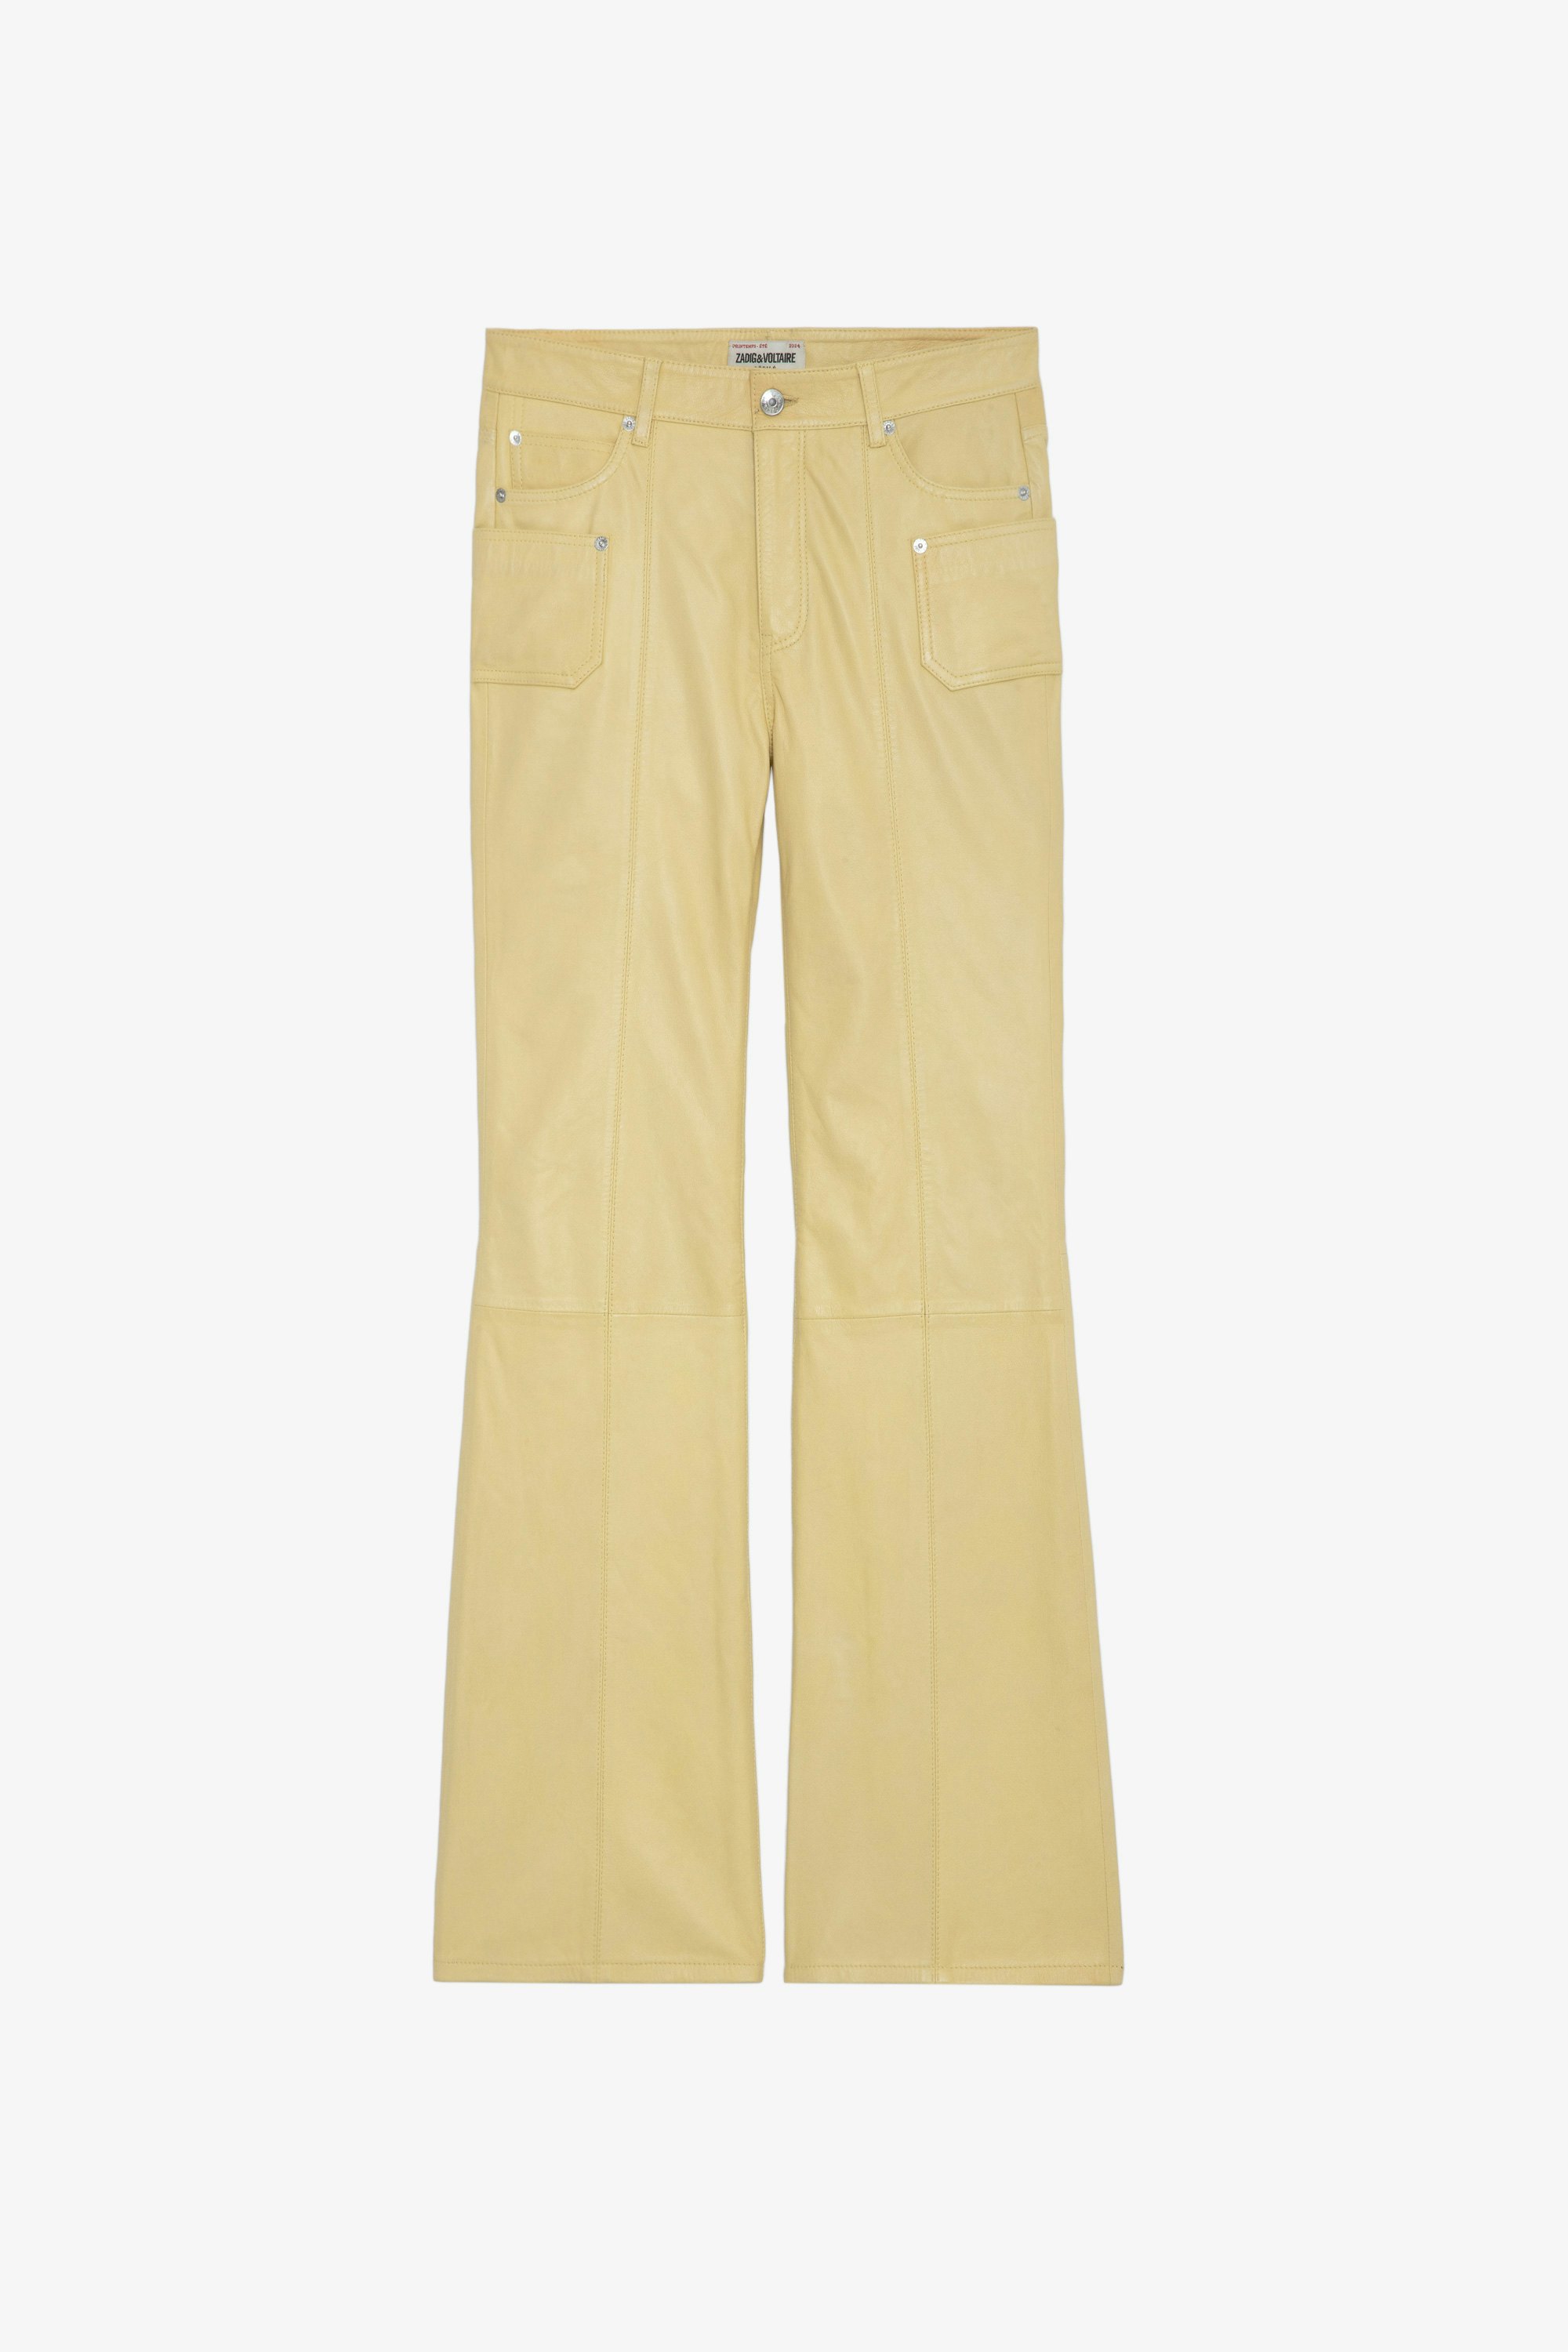 Pantalon Elvir Cuir - Pantalon en cuir lisse jaune clair à bas évasé et poches.